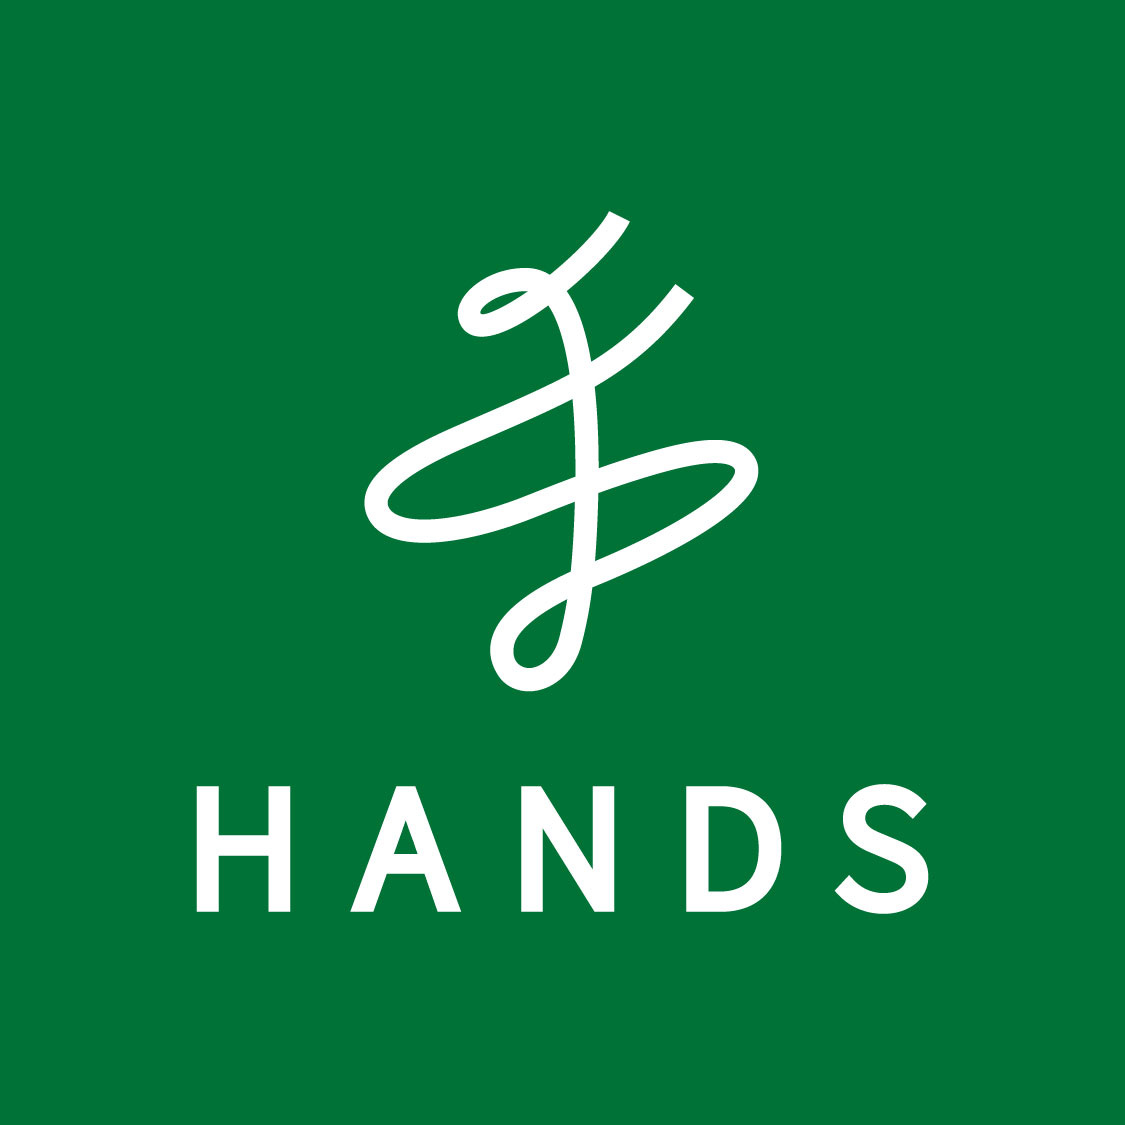 PLQ--HANDS-Logo-Files-(Green-Vertical) (new logo).jpg